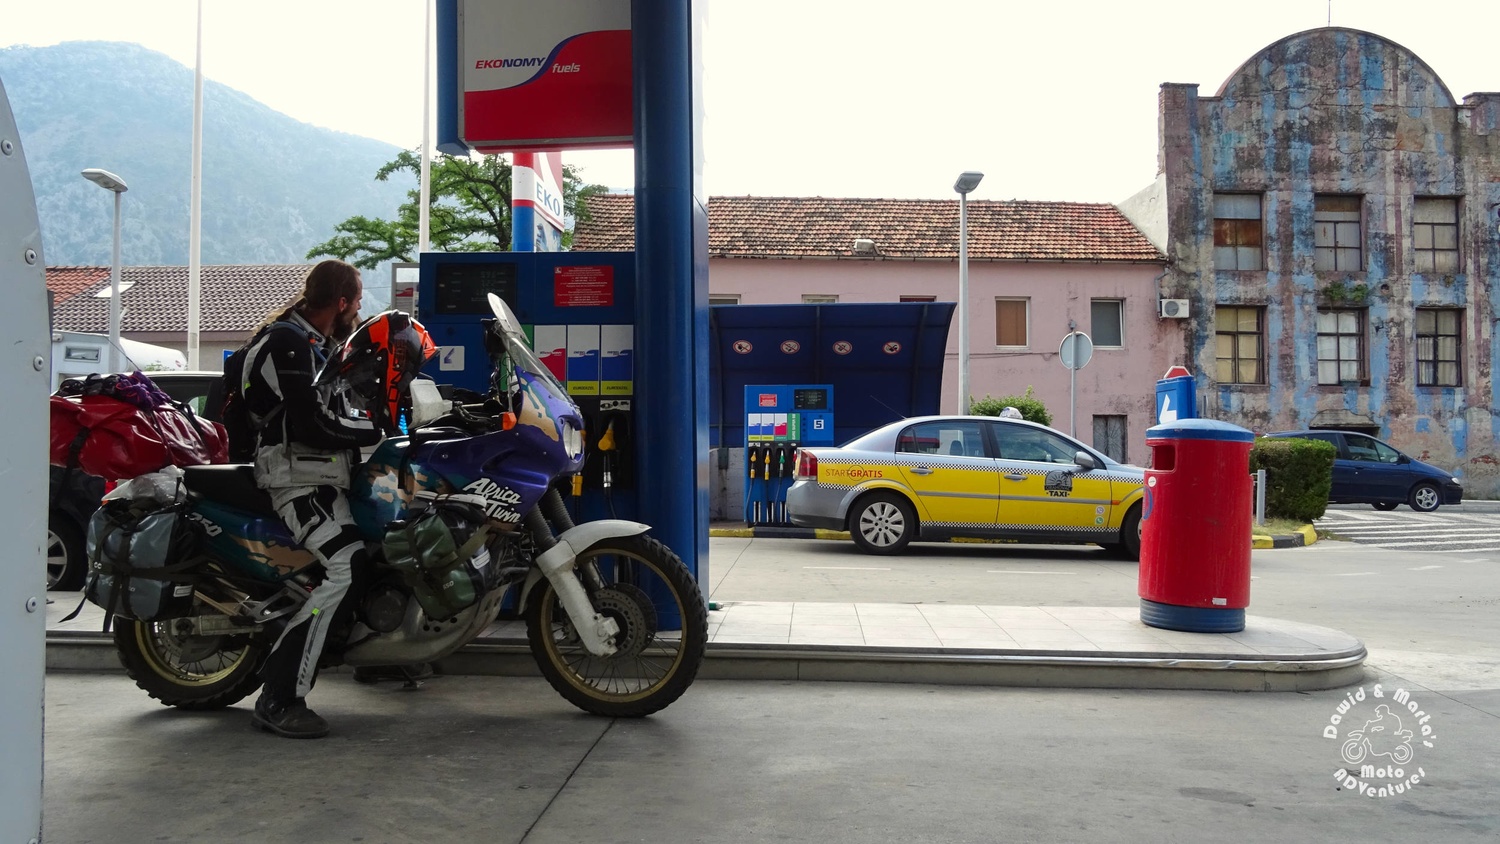 Tanking the motorbike at gas station in Skaljari